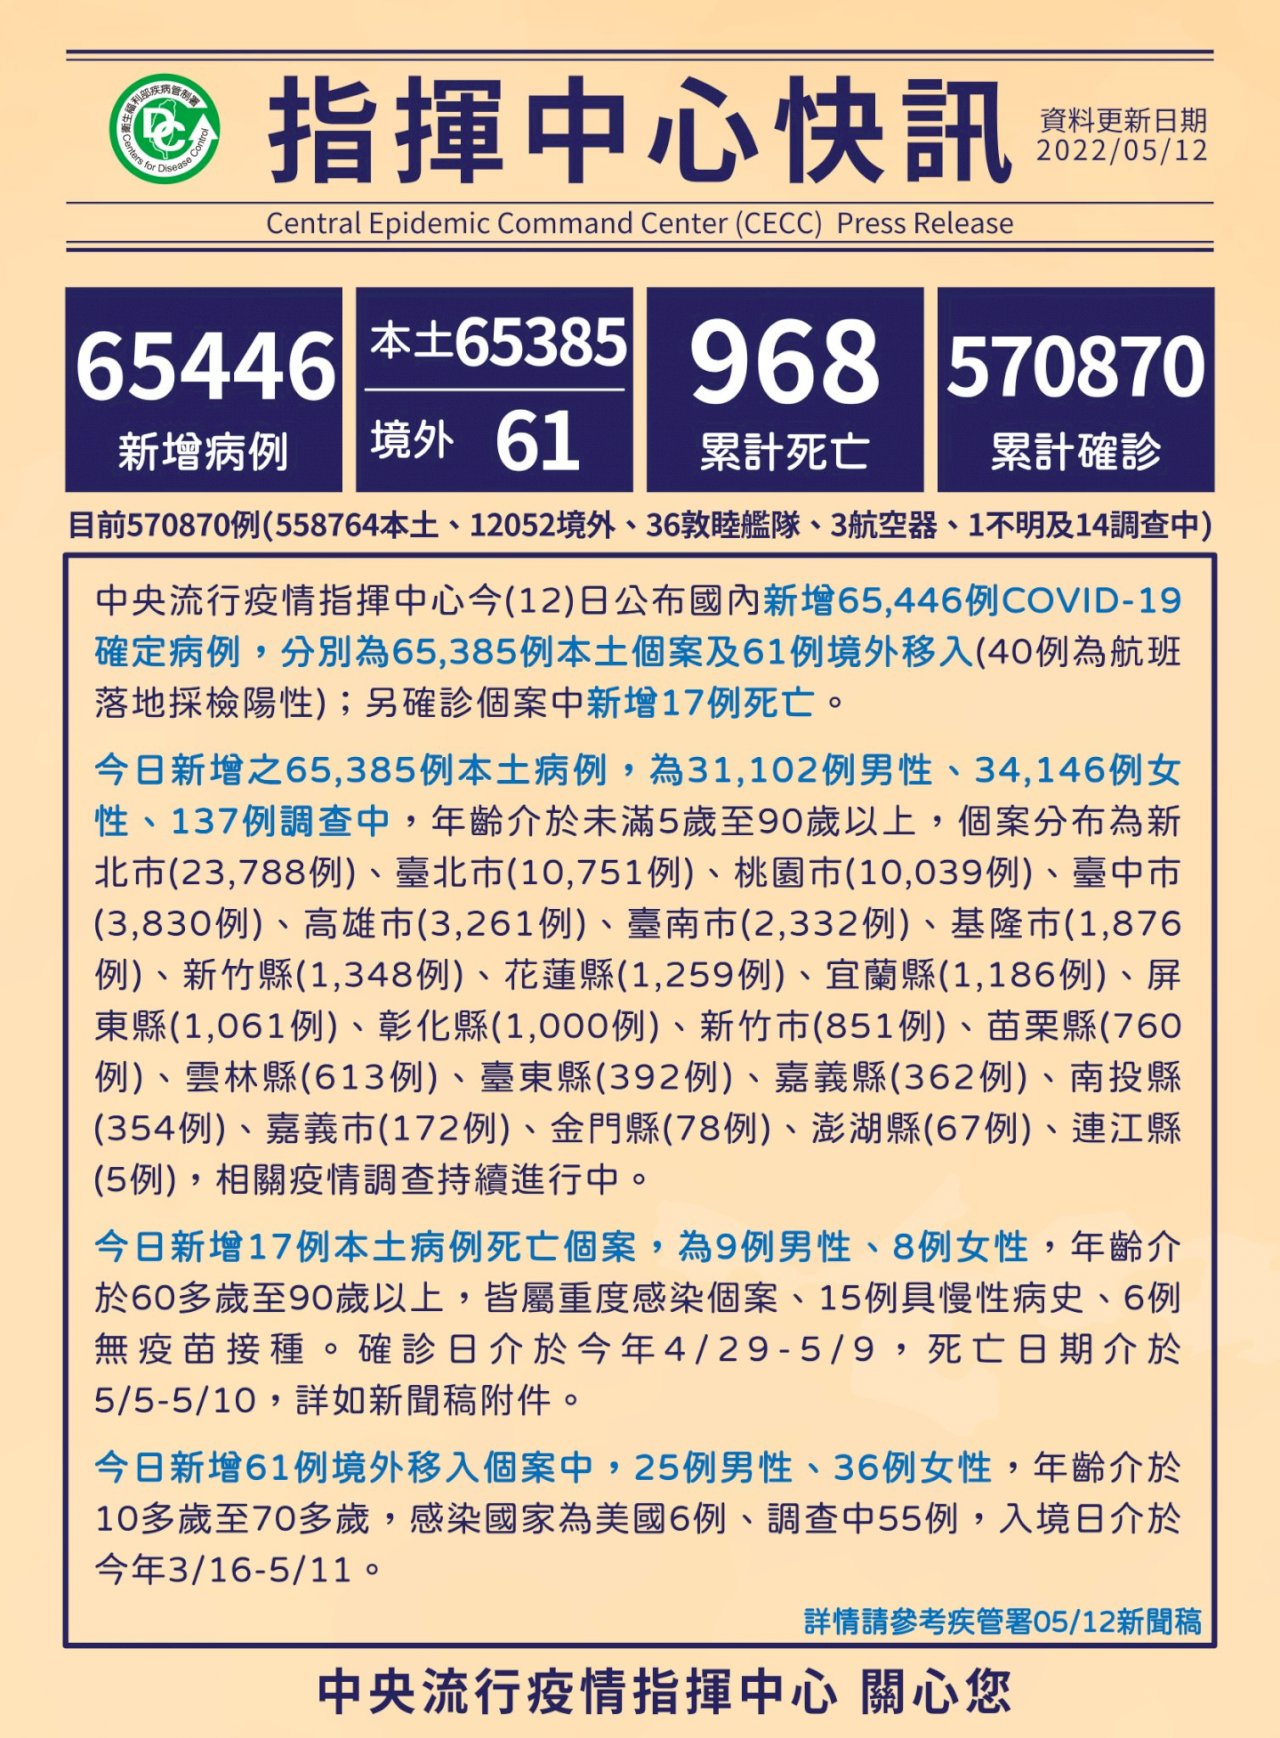 Ngày 12/5, Đài Loan ghi nhận thêm 65385 ca nhiễm COVID-19 nội địa, 61 nhập cảnh từ nước ngoài và 17 trường hợp tử vong